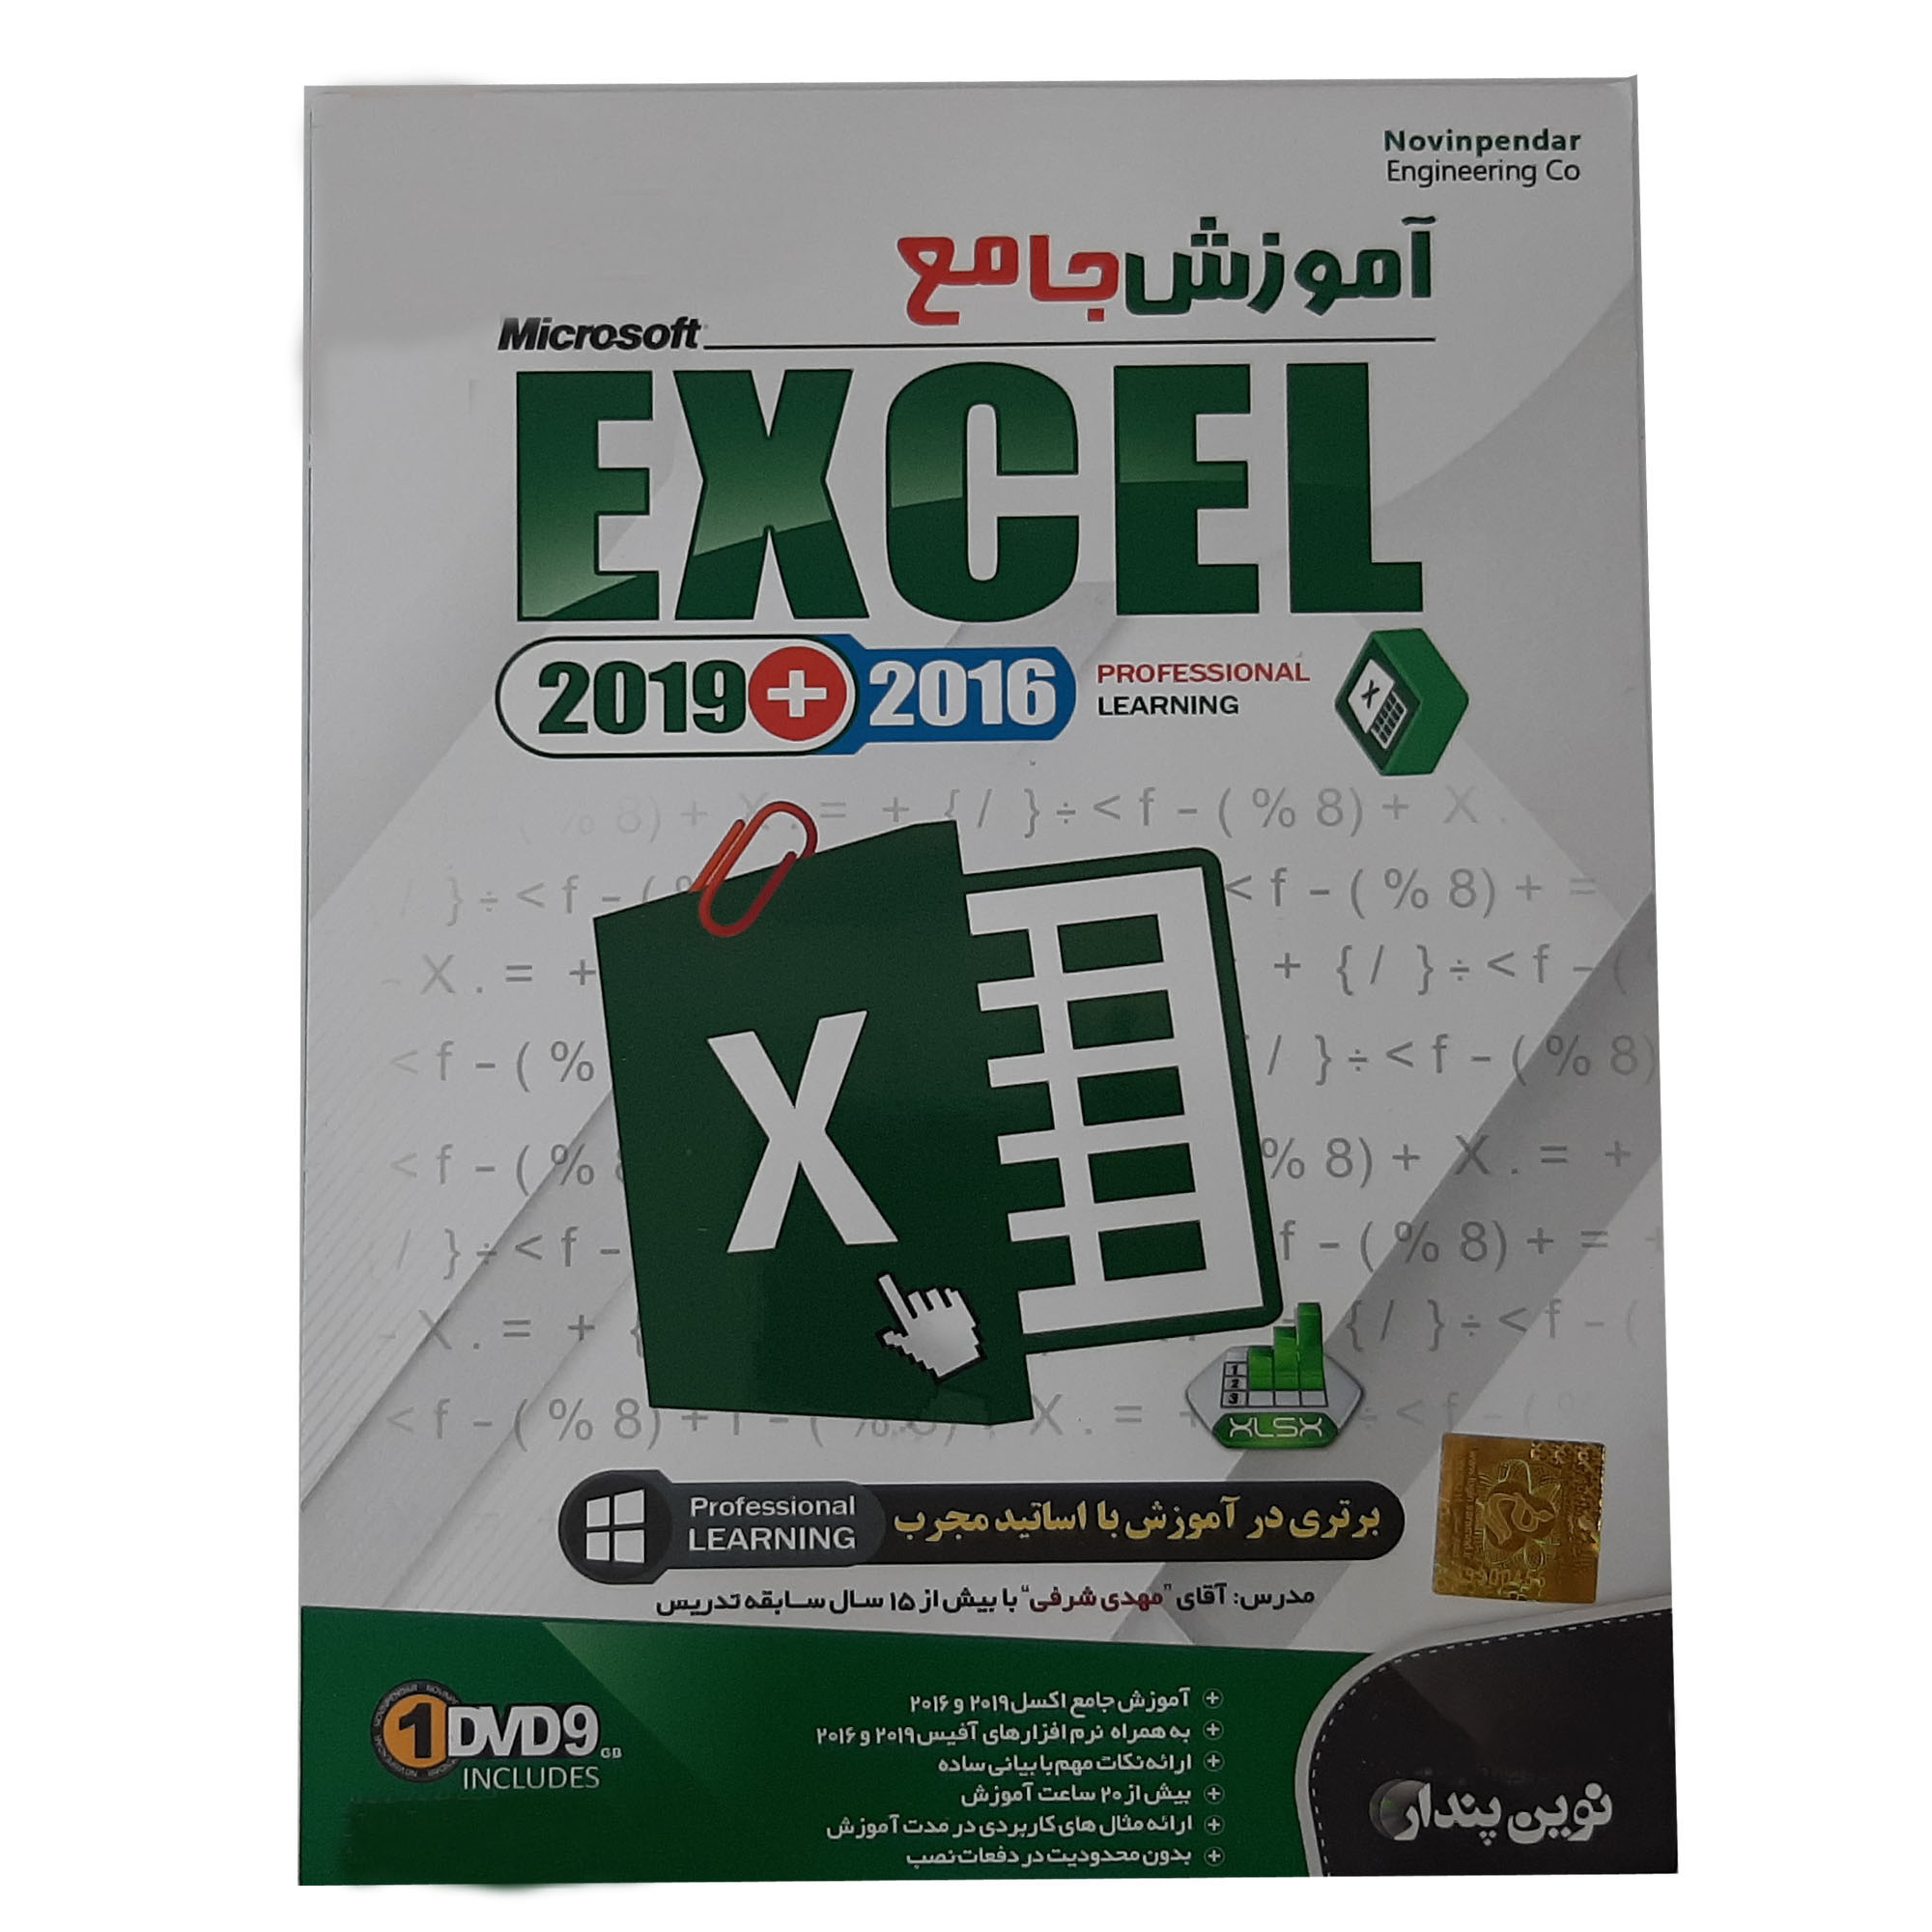 نرم افزار آموزش جامع Microsoft Excel 2019+2016 نشر نوین پندار